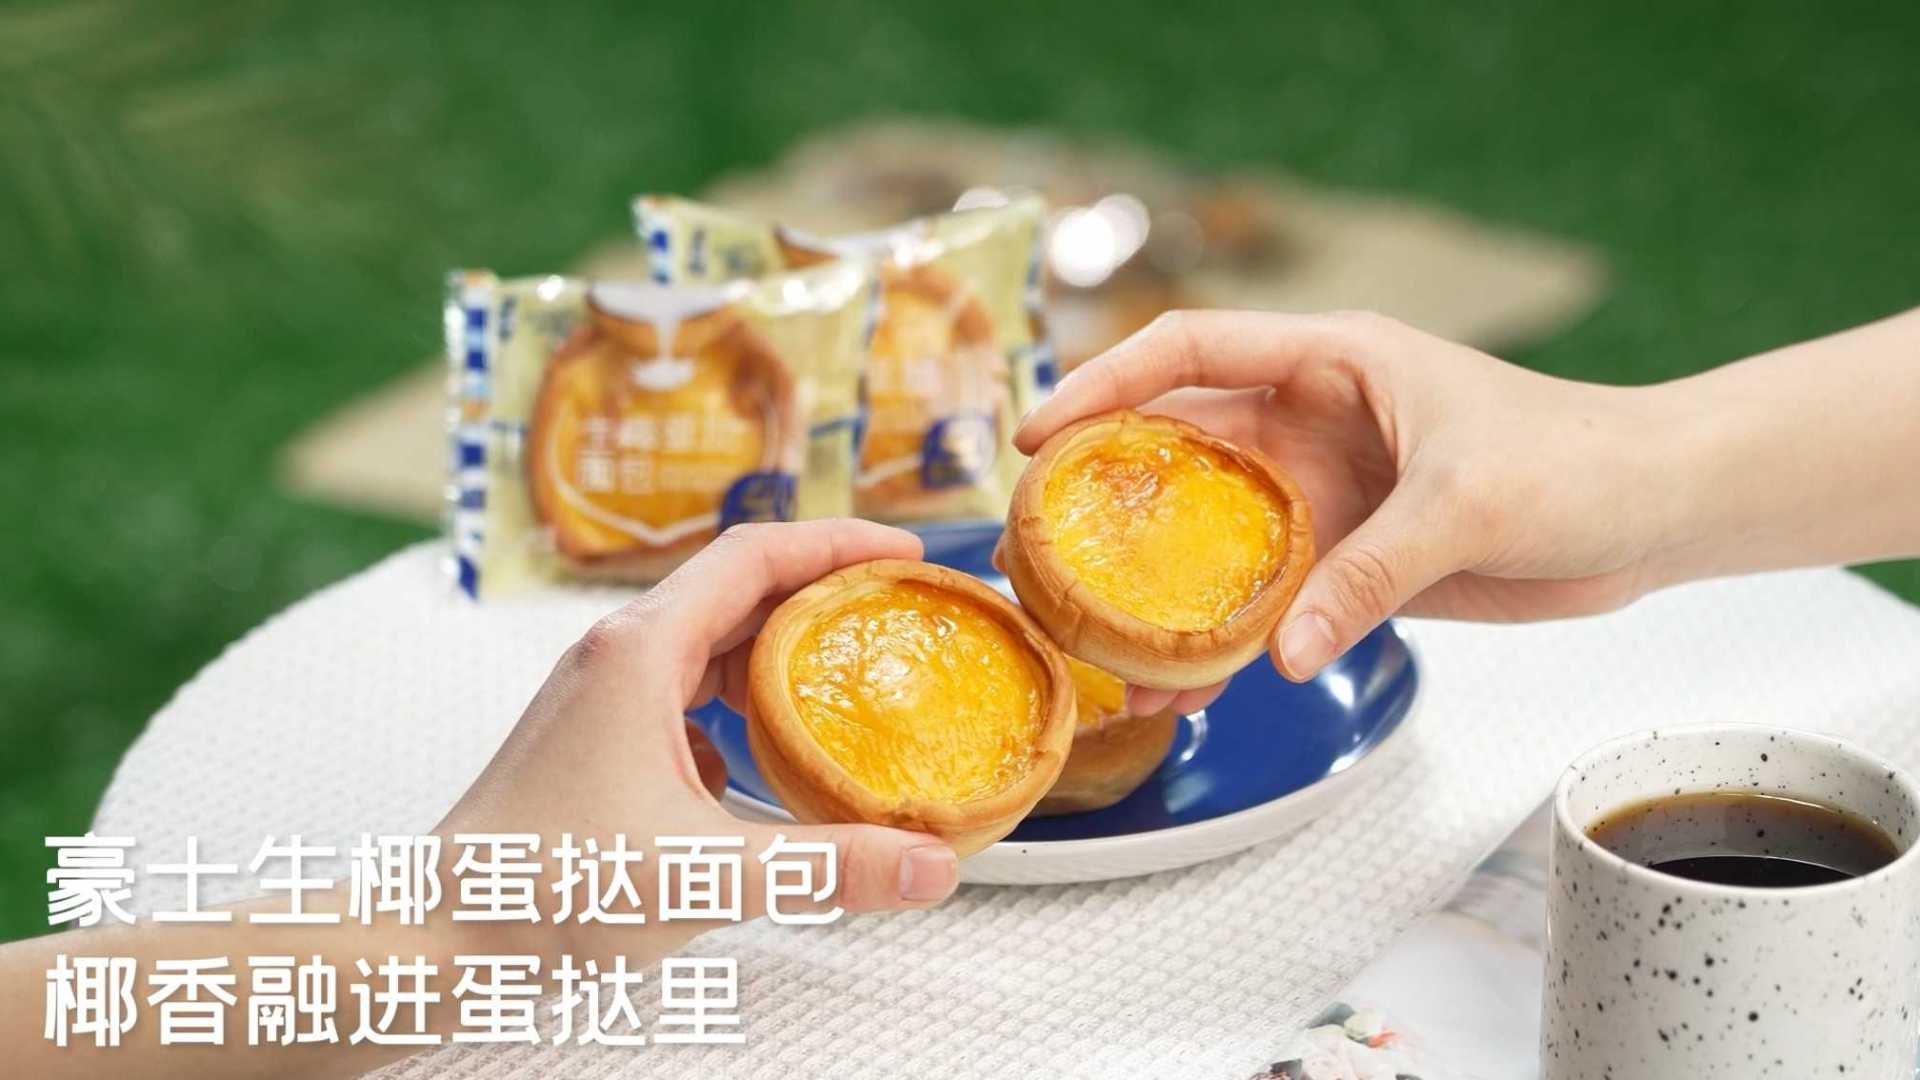 【食品广告】豪士 生椰蛋挞面包 产品广告